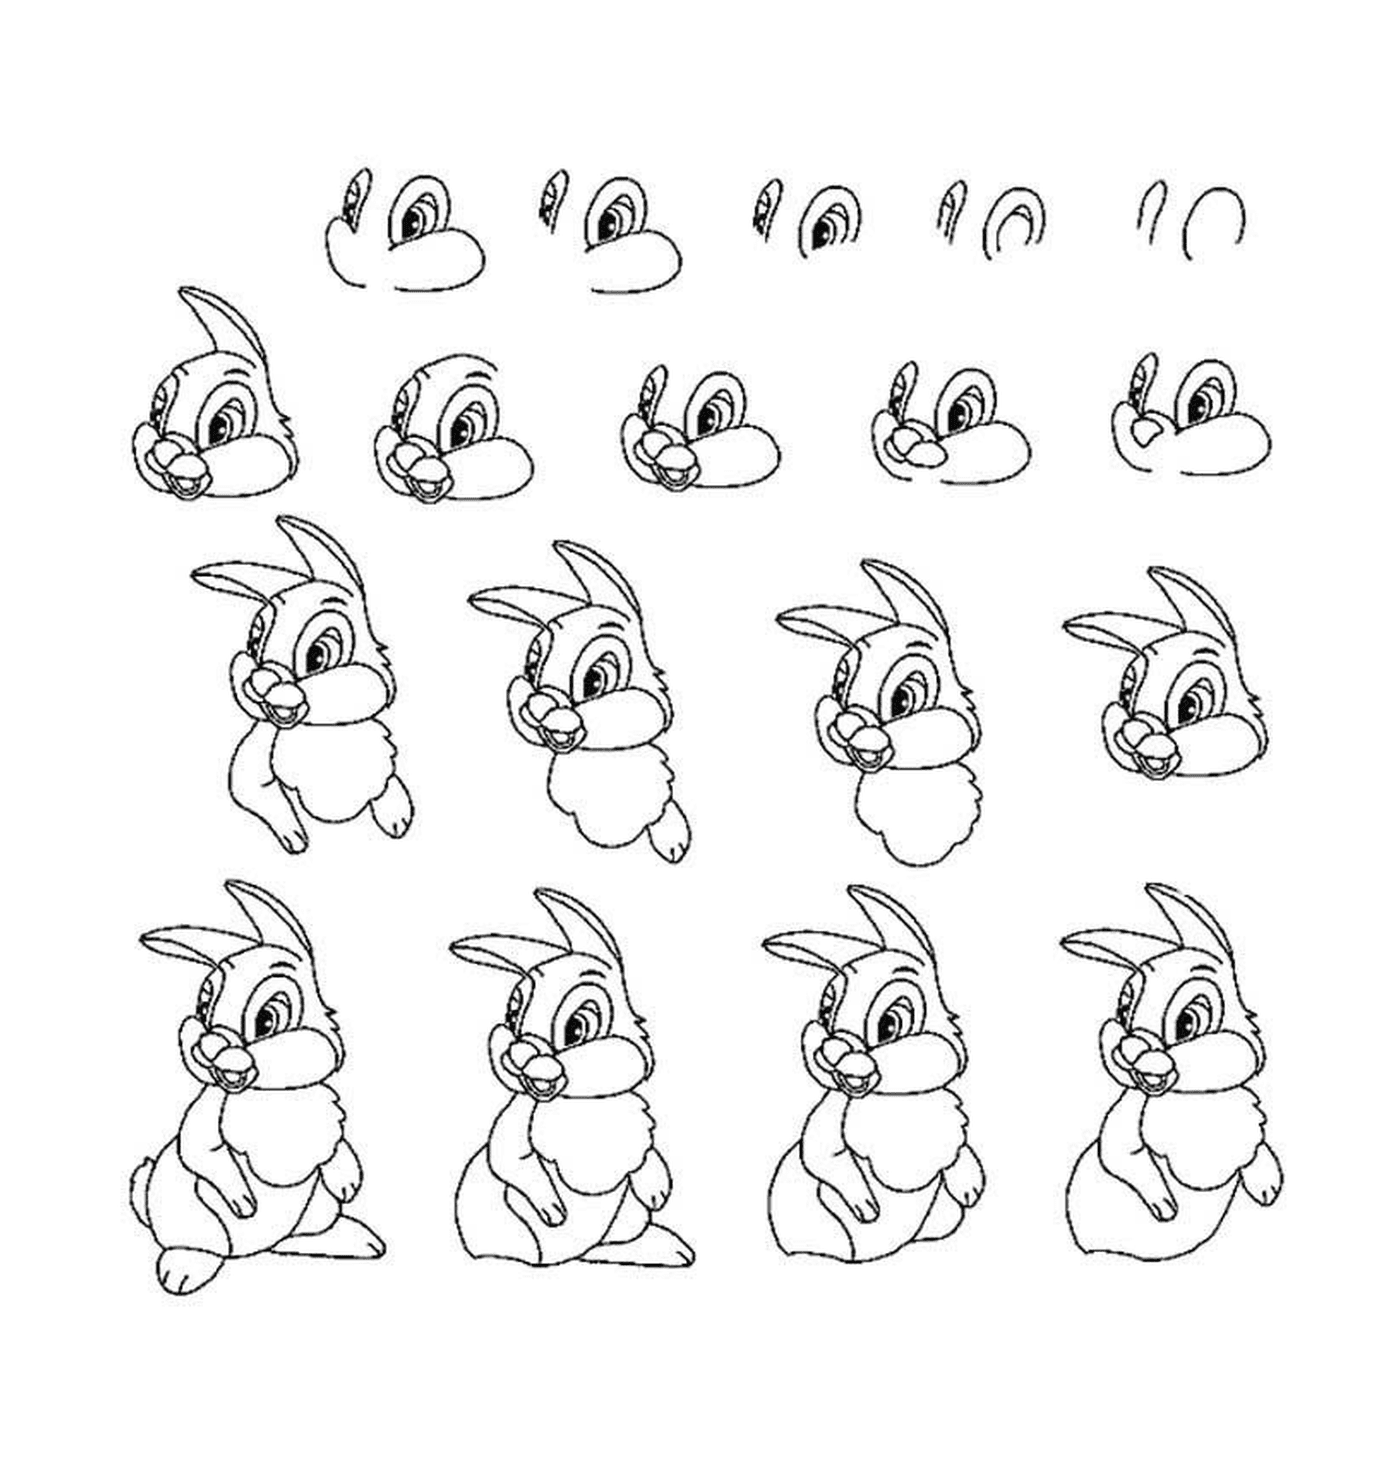  兔子的不同姿势 